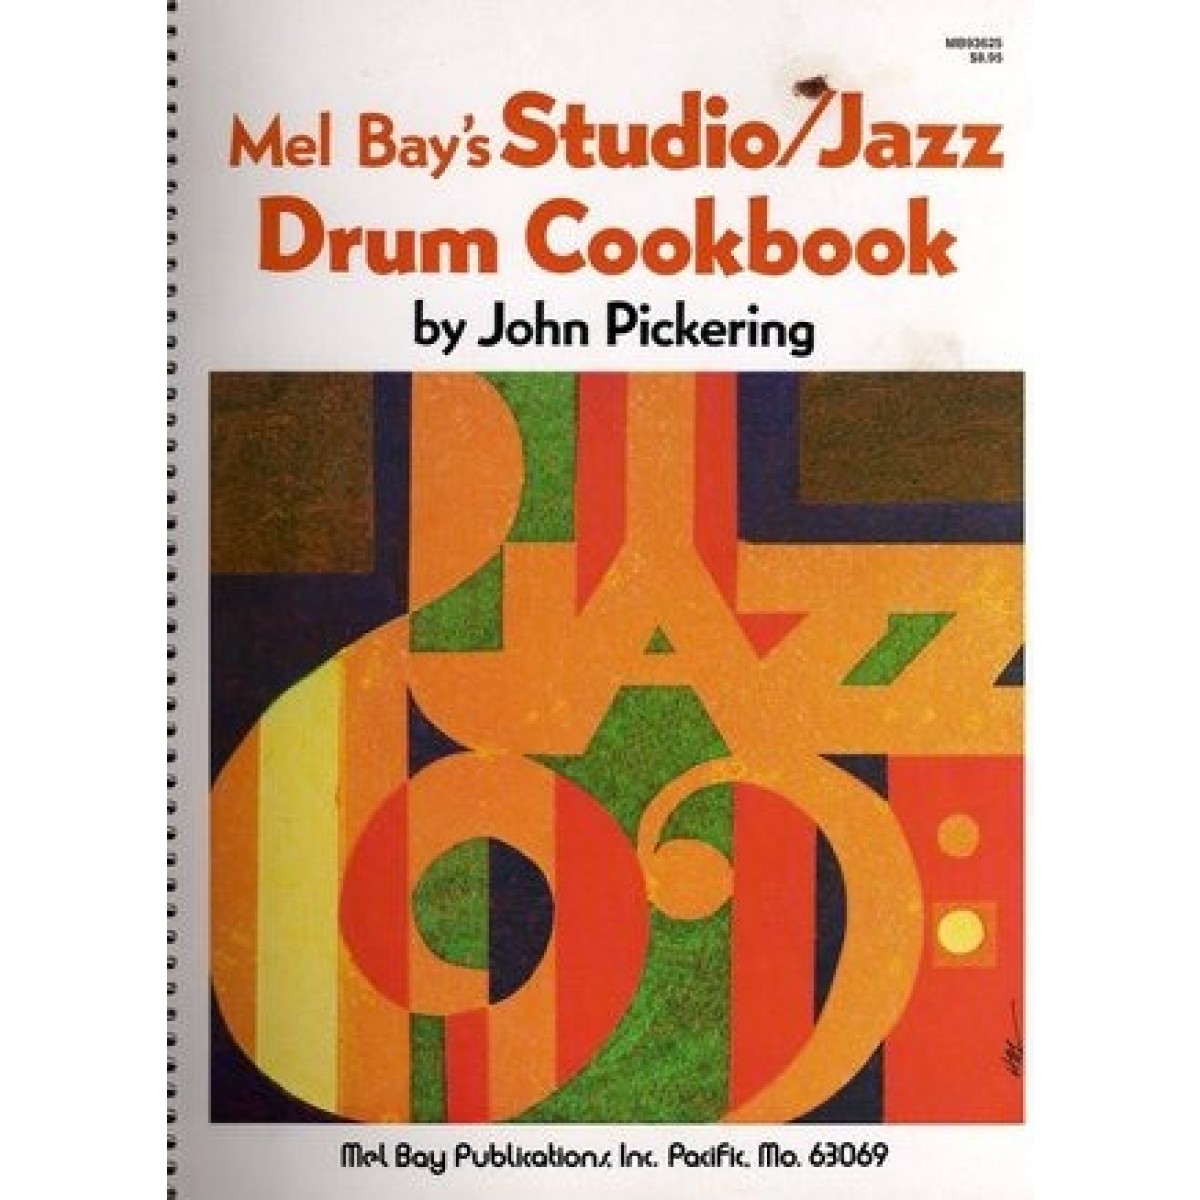 Mel Bay's Studio/jazz Drum Cookbook